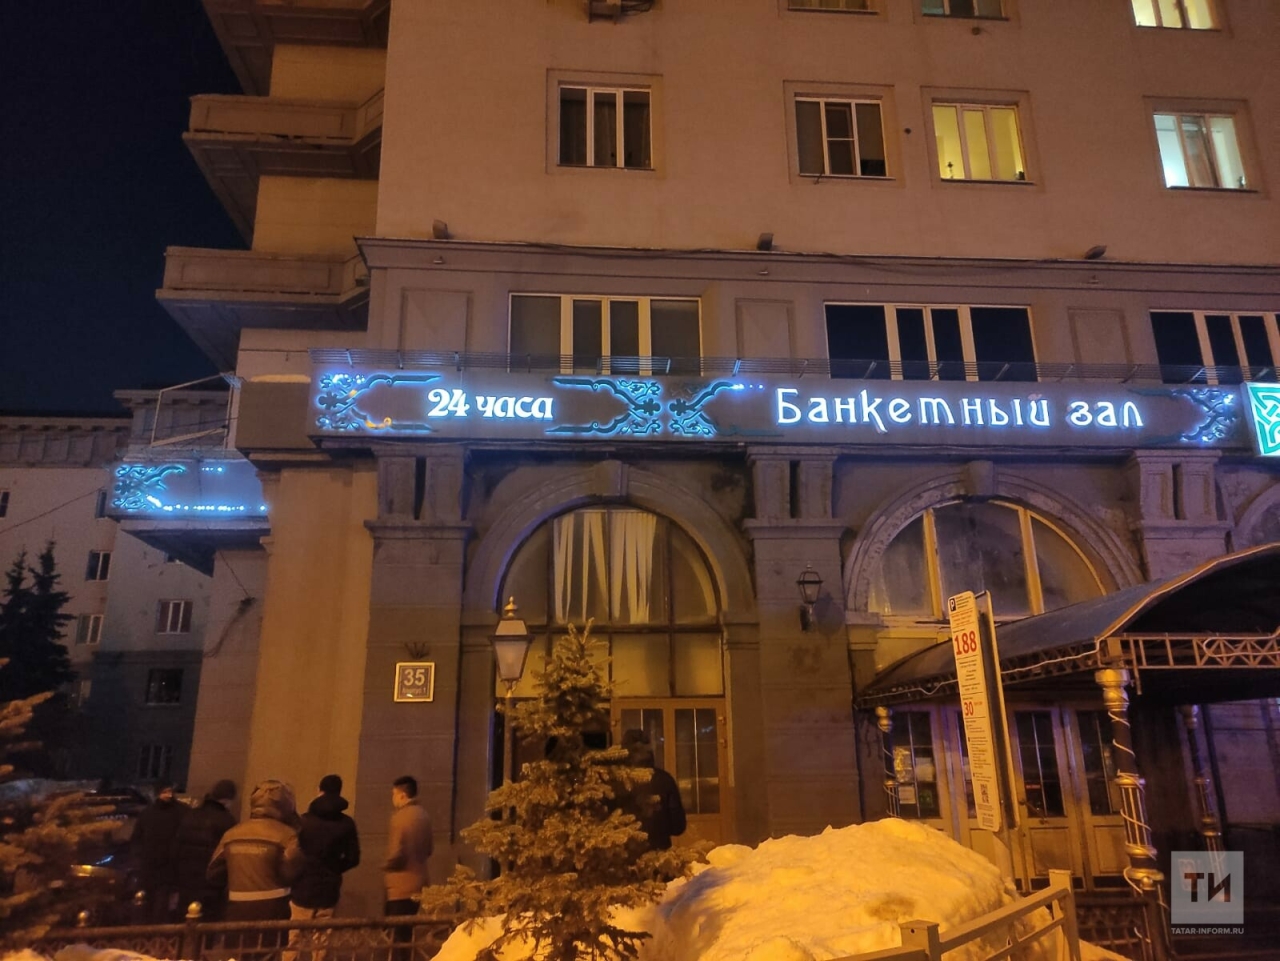 Жильцам казанской пятиэтажки пришлось ночью эвакуироваться из своих квартир из-за пожара